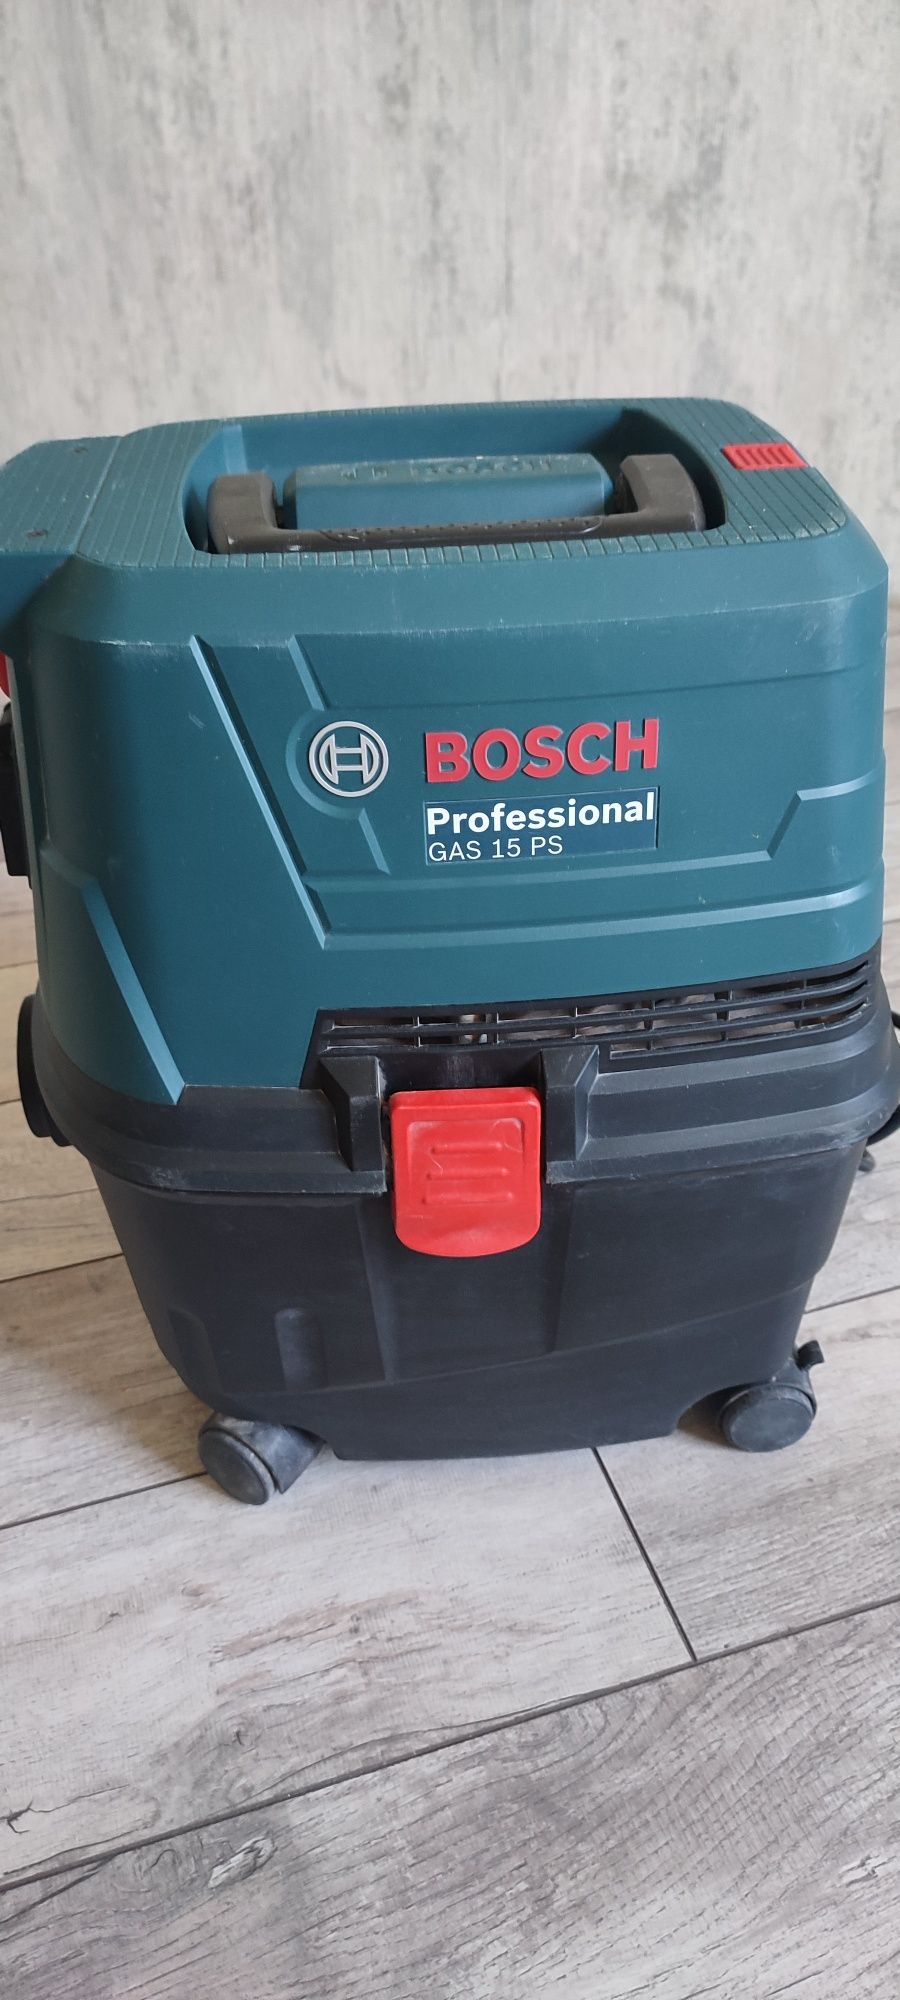 Продам Пылесос строительный Bosch GAS 15 PS Profession